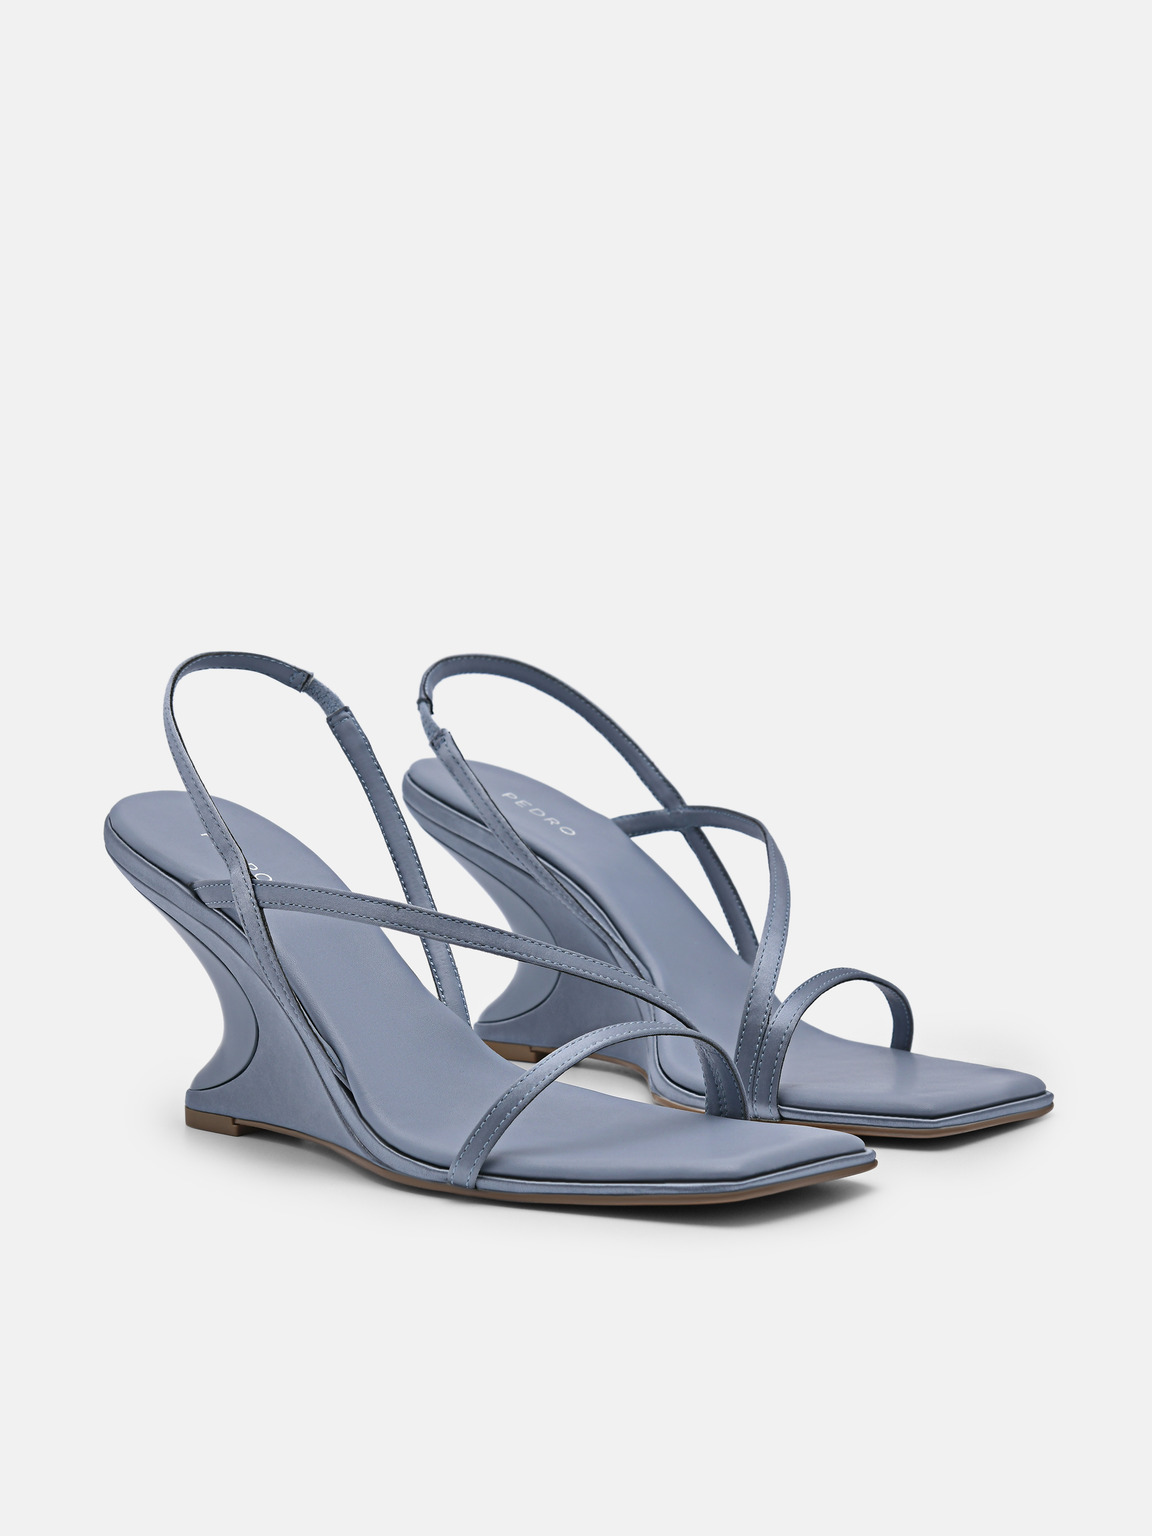 Oriana Wedge Sandals, Slate Blue